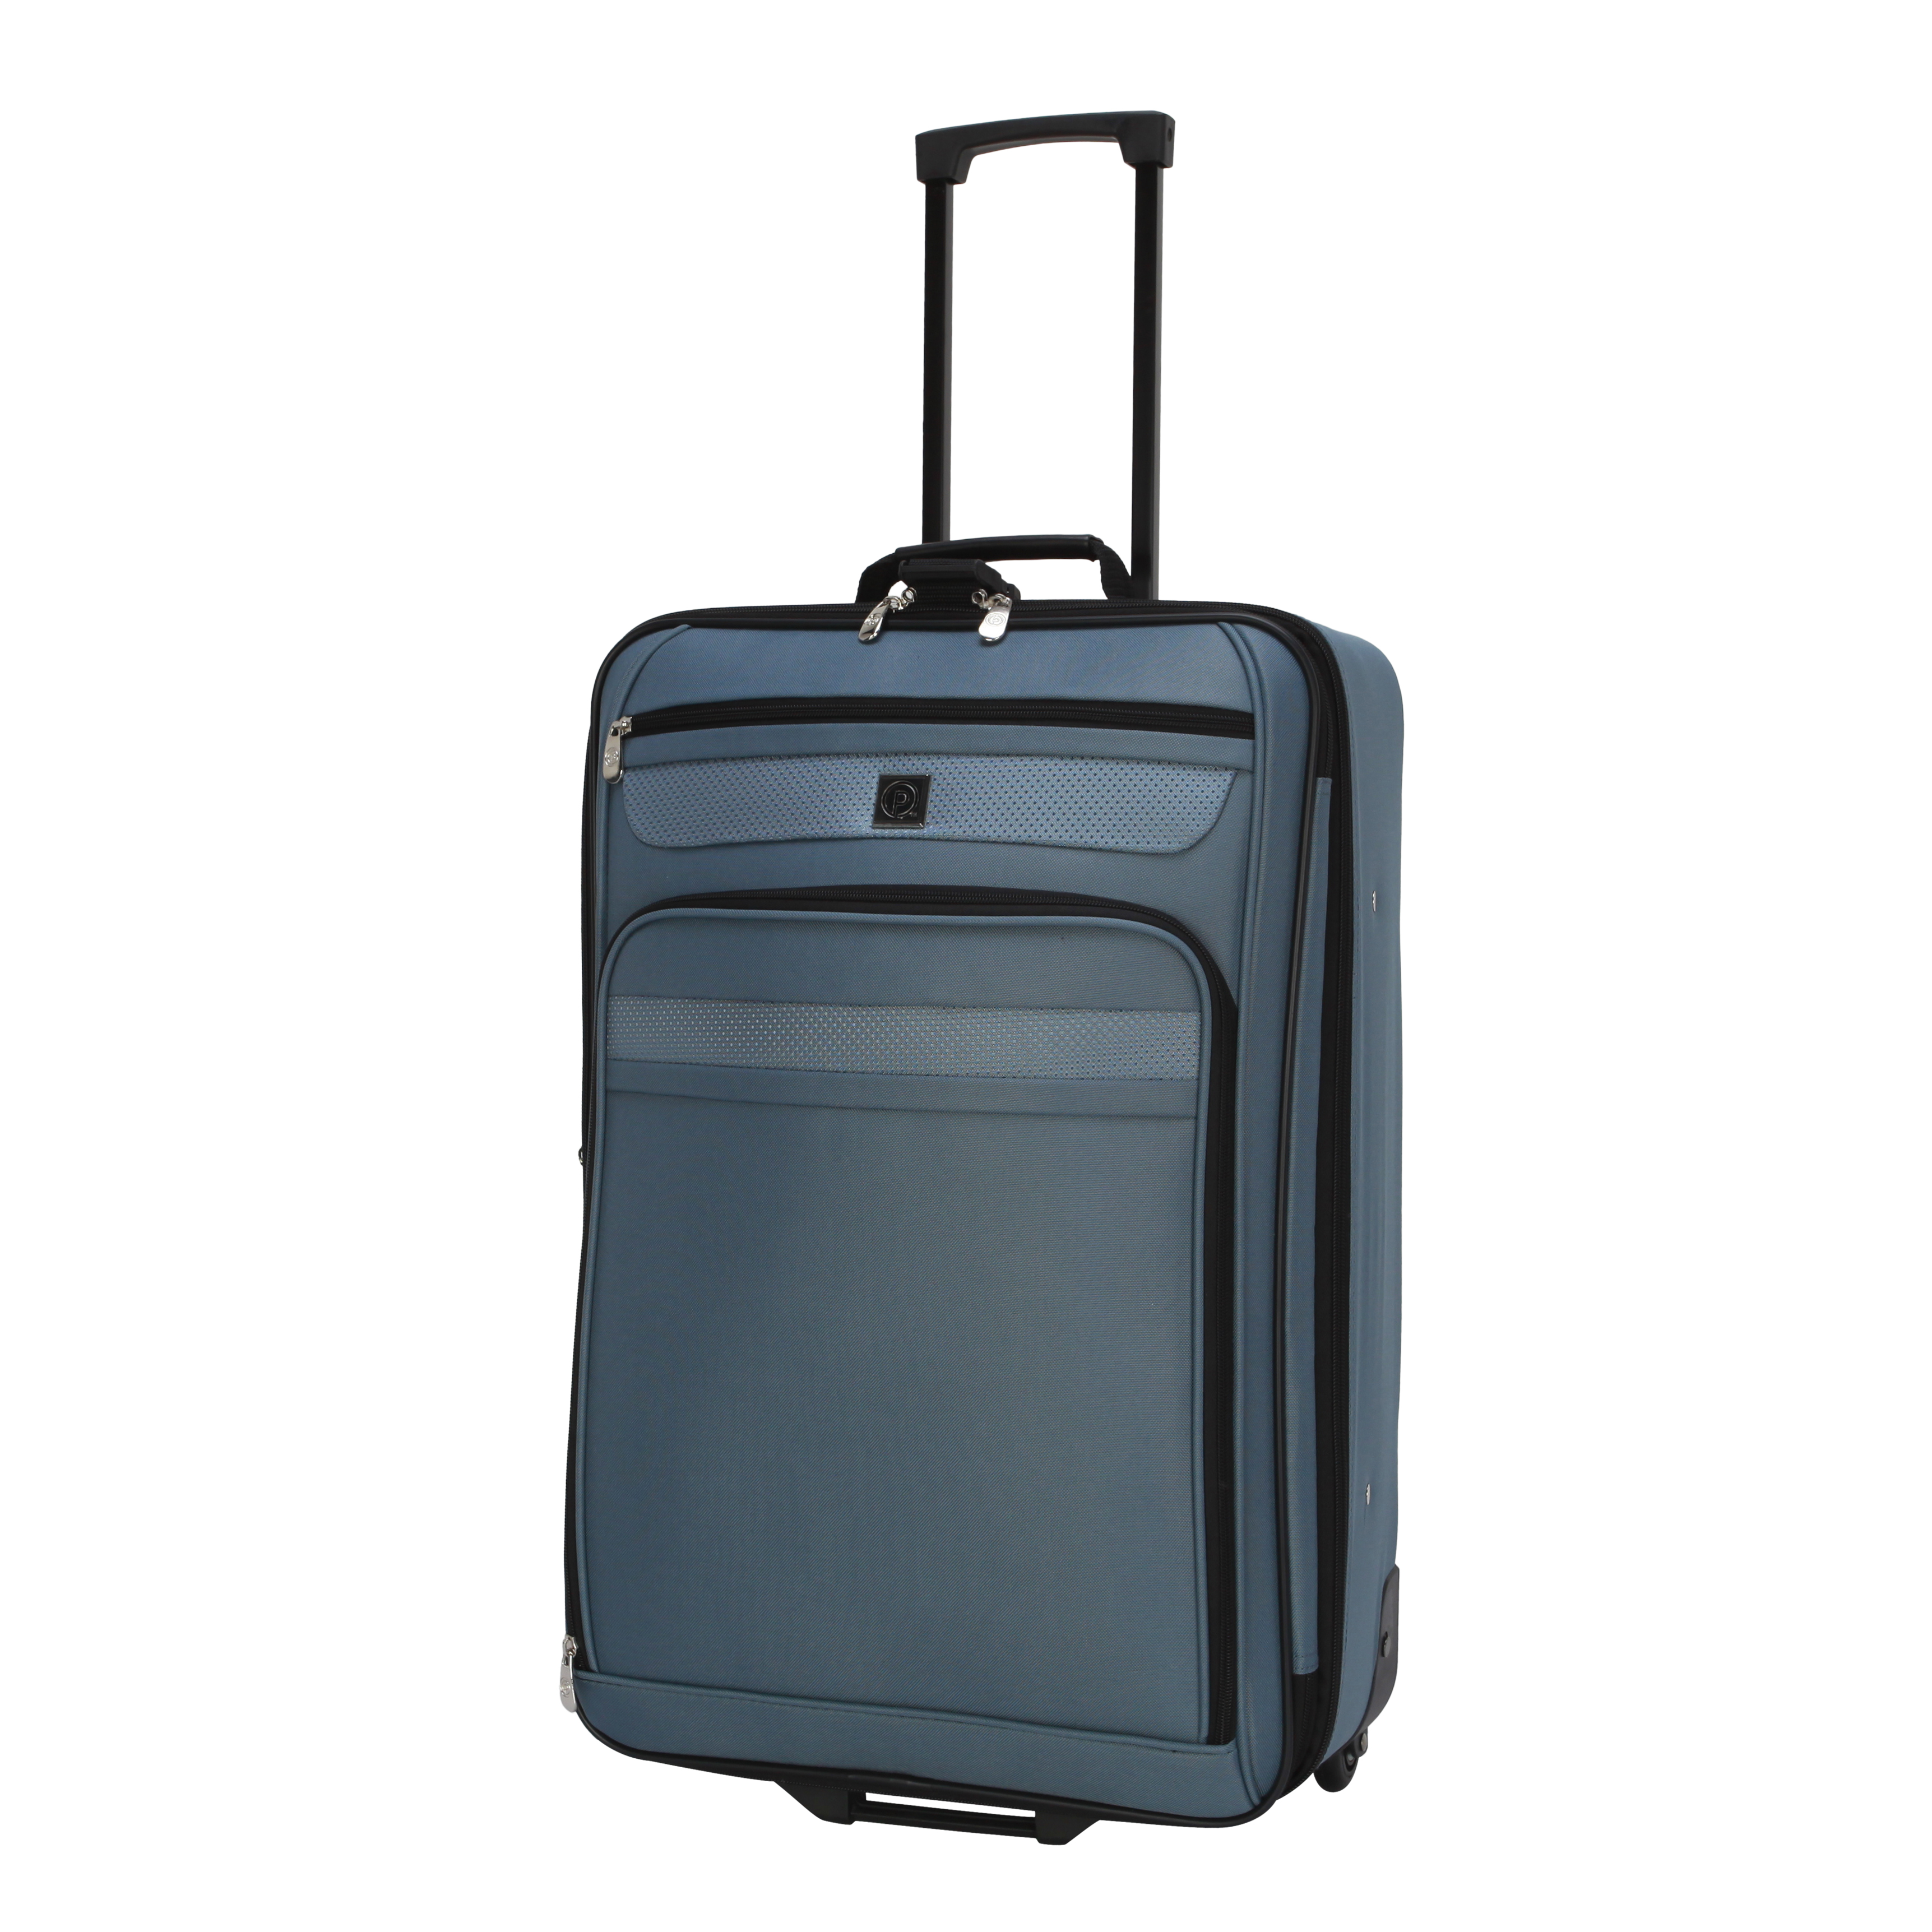 Protege 3-Piece Softside Luggage Value Travel Set - Blue - image 2 of 11